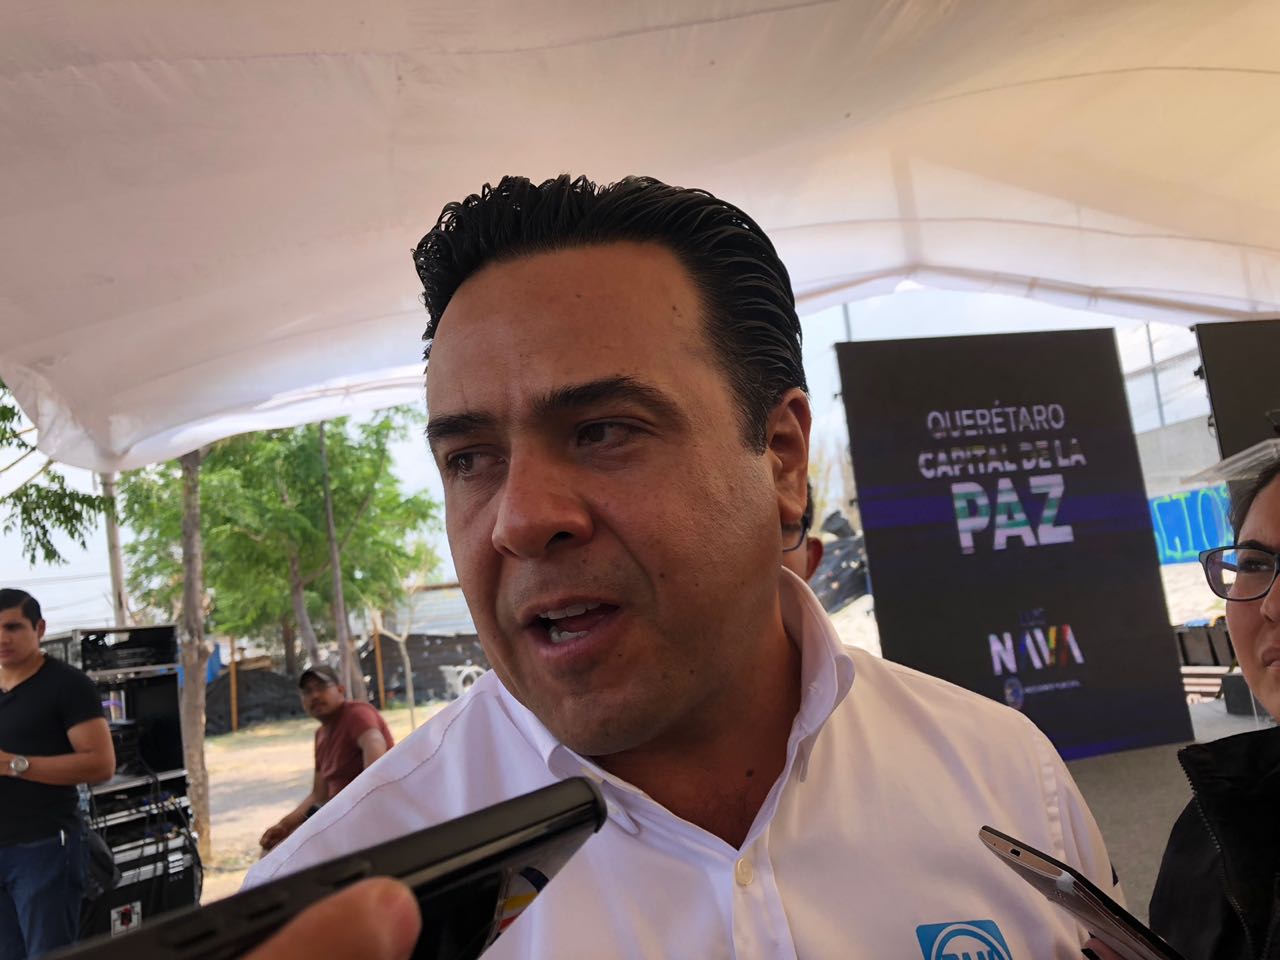  Luis Nava acudirá al debate organizado por Coparmex con propuestas y sin señalamientos